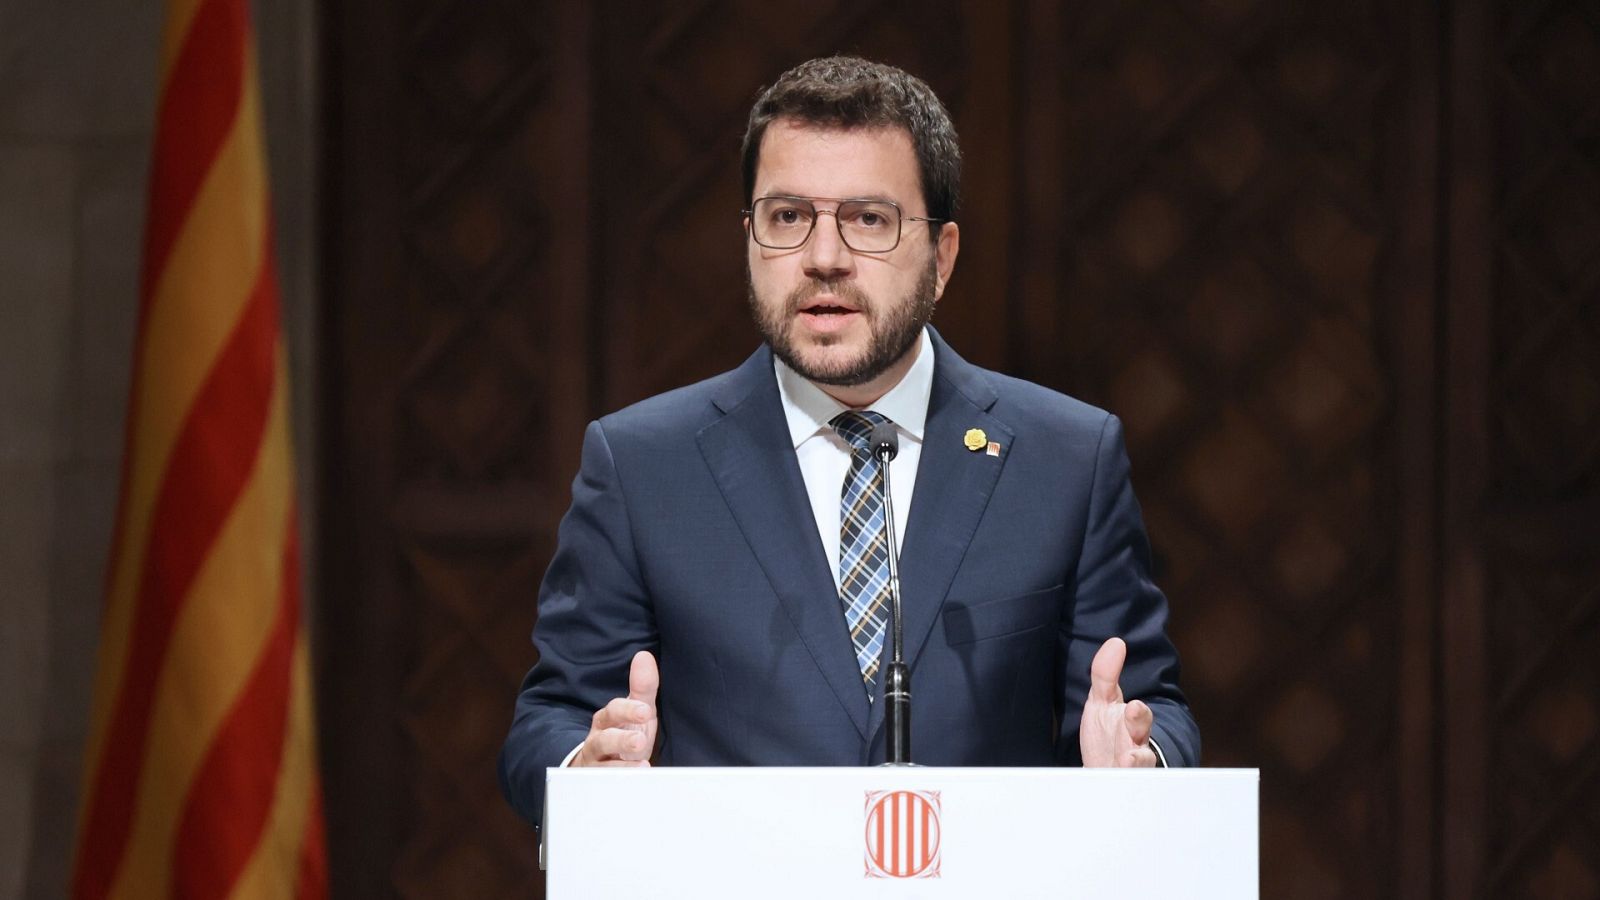 El president de la Generalitat compareix després del trencament del Govern